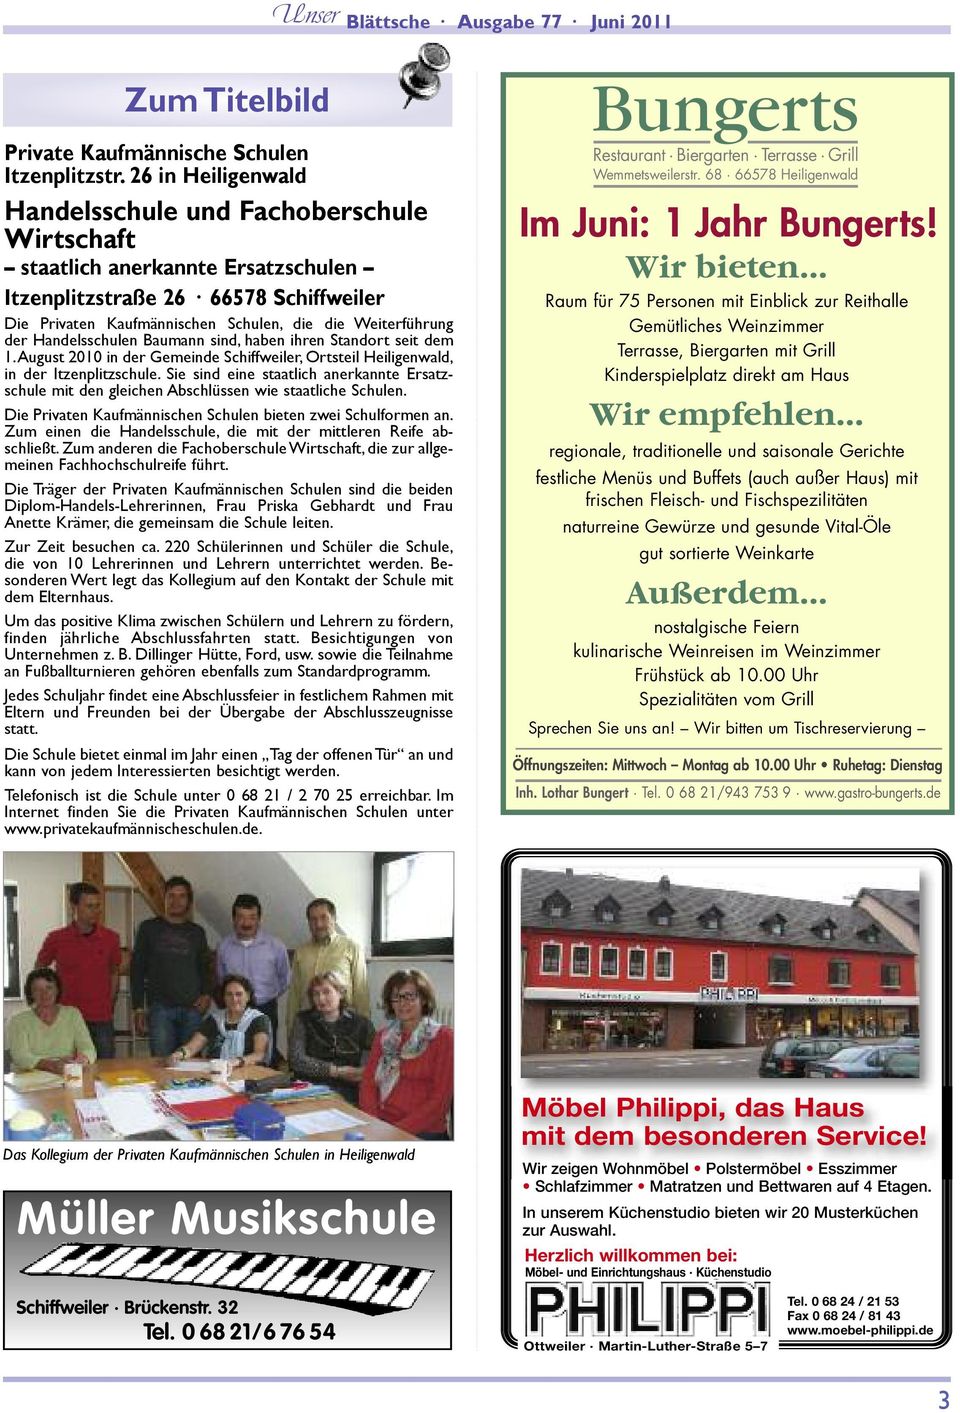 Handelsschulen Baumann sind, haben ihren Standort seit dem 1. August 2010 in der Gemeinde Schiffweiler, Ortsteil Heiligenwald, in der Itzenplitzschule.